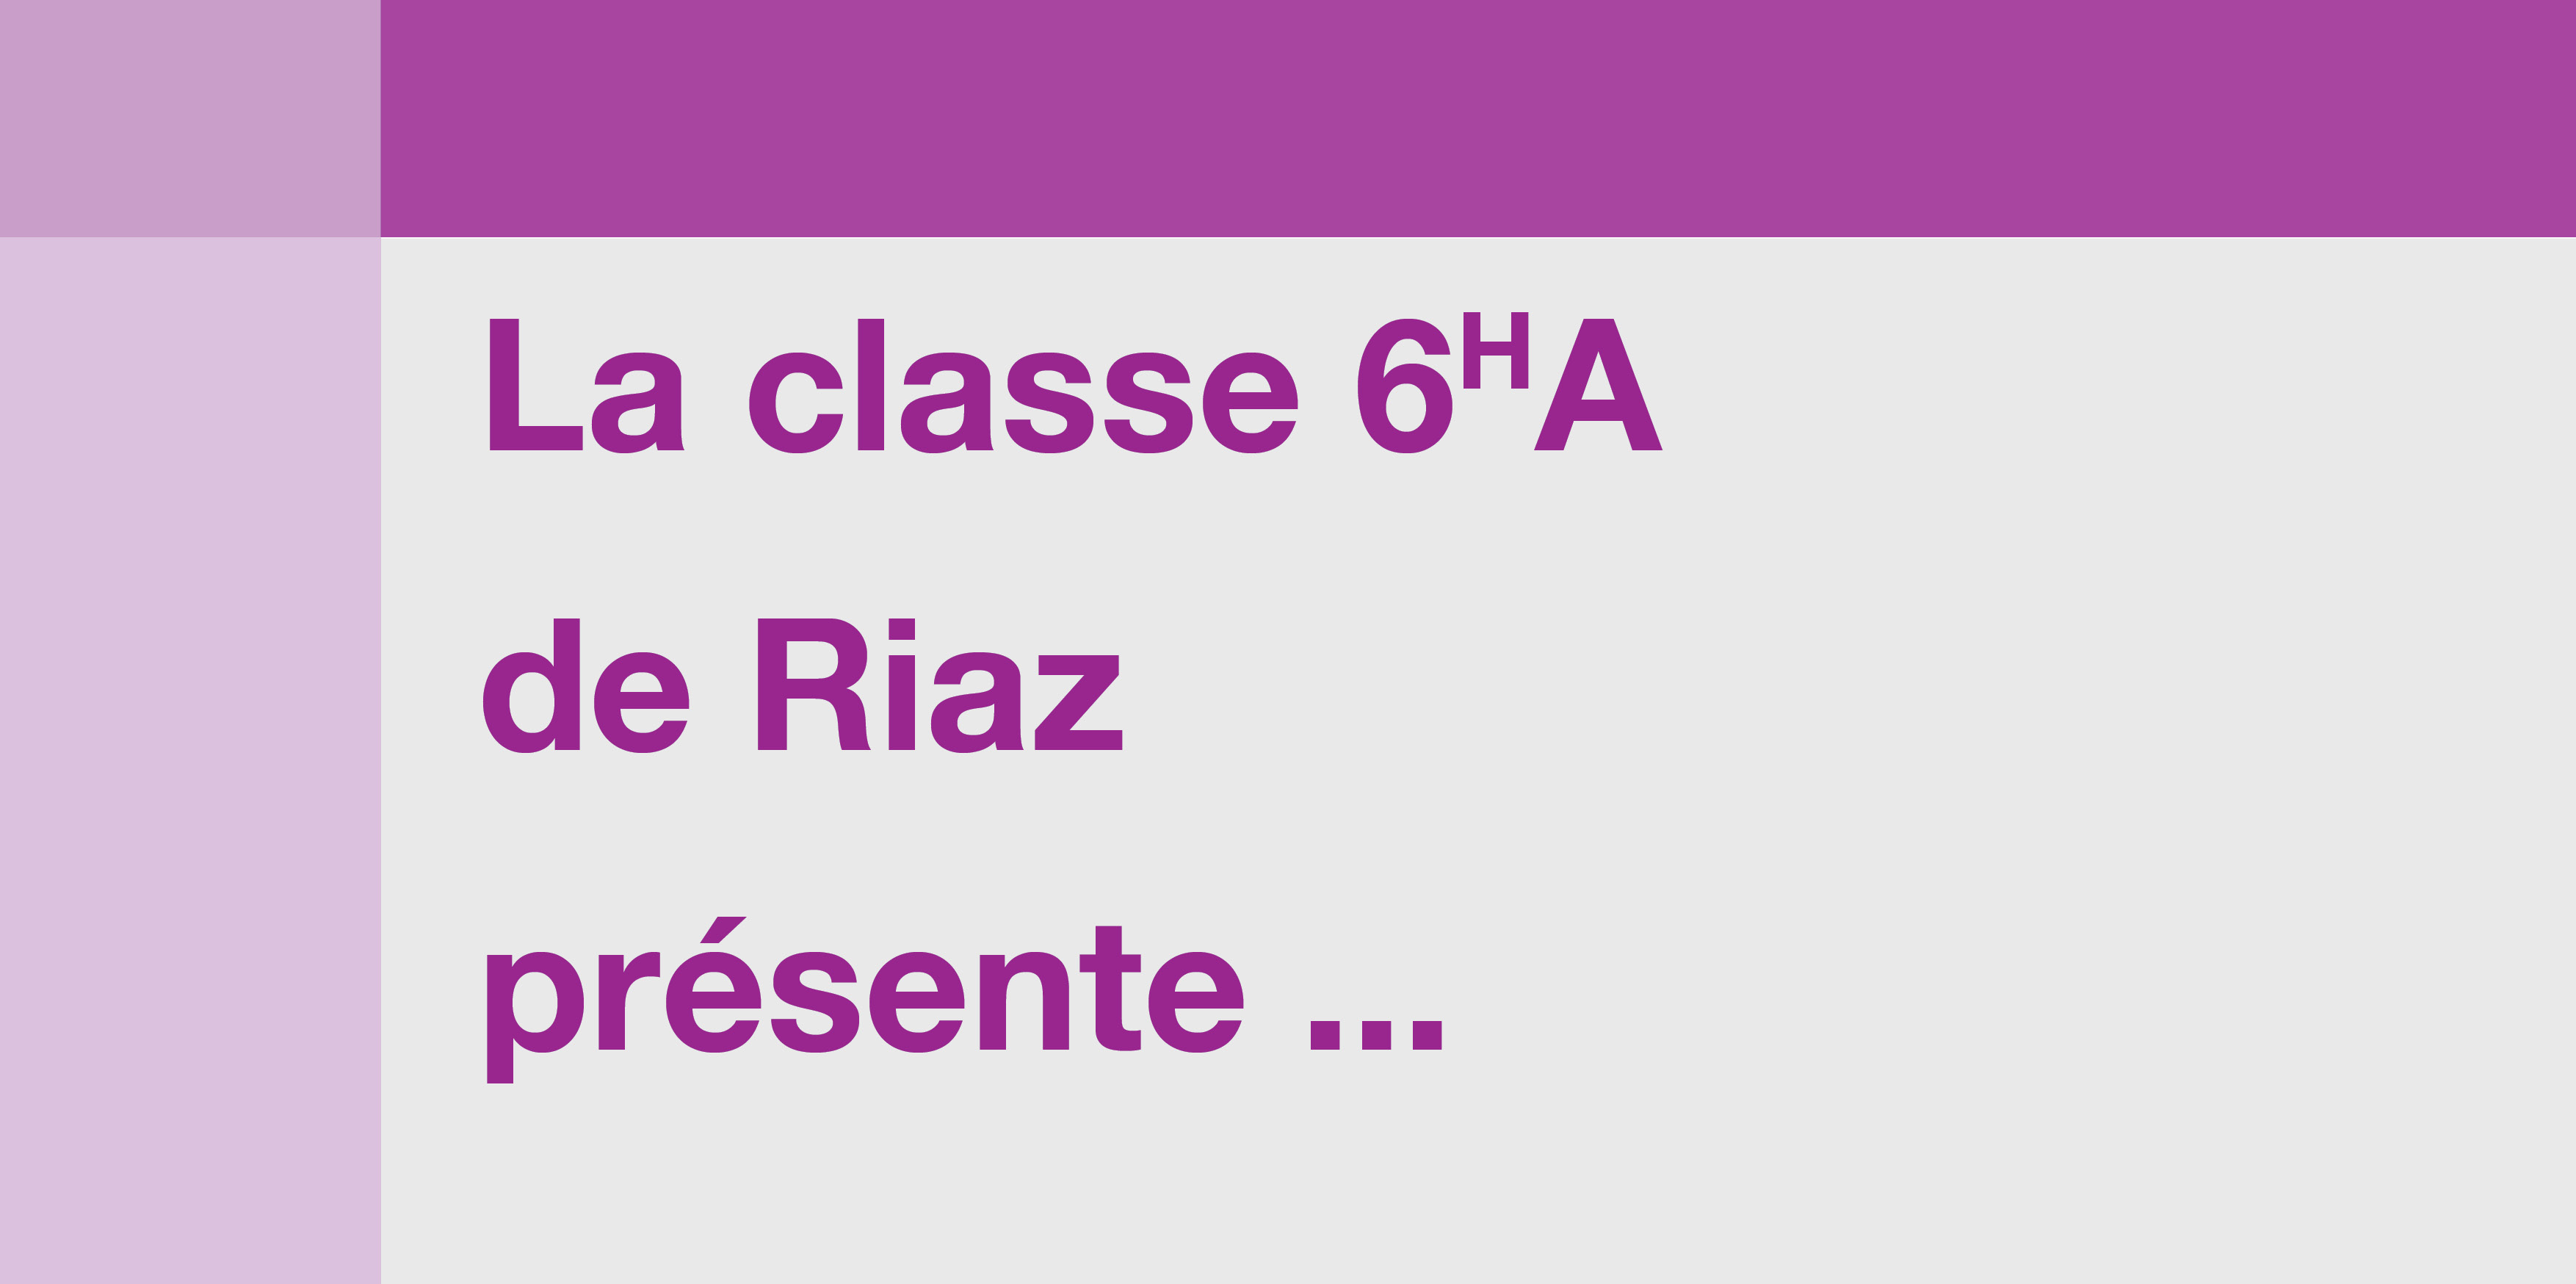 La classe 6HA de Riaz présente ...